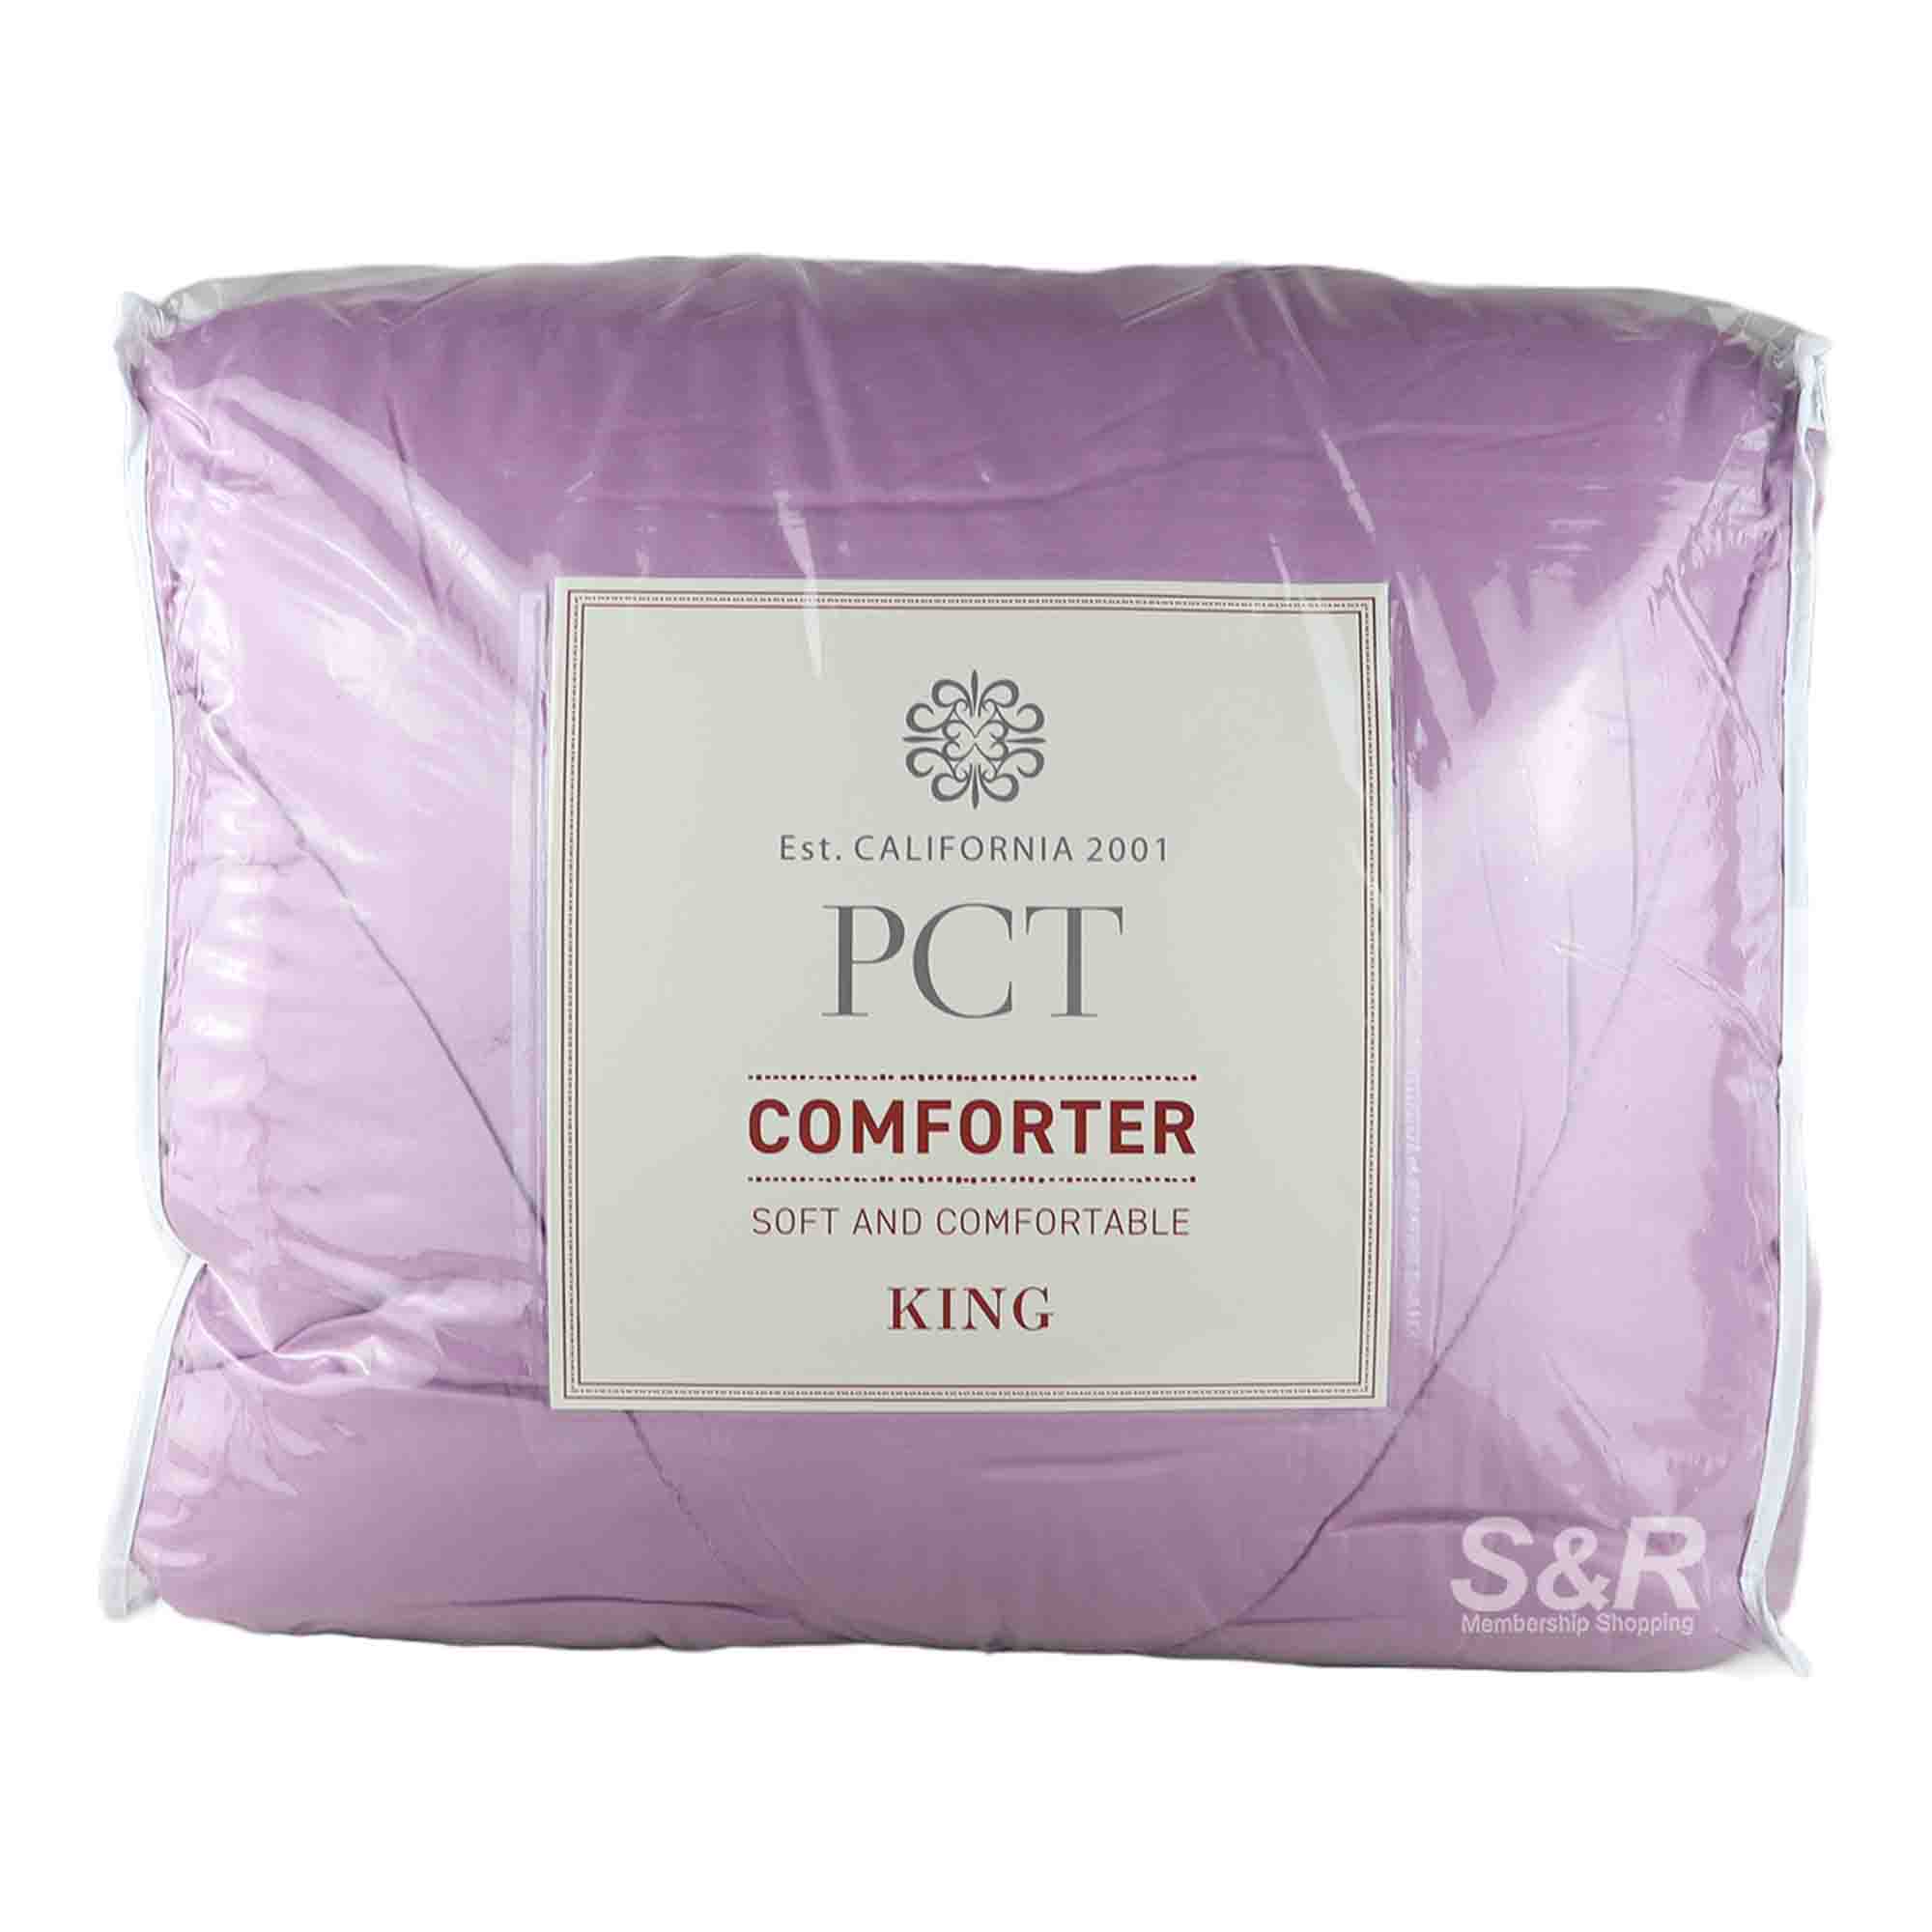 PCT King Comforter 1pc